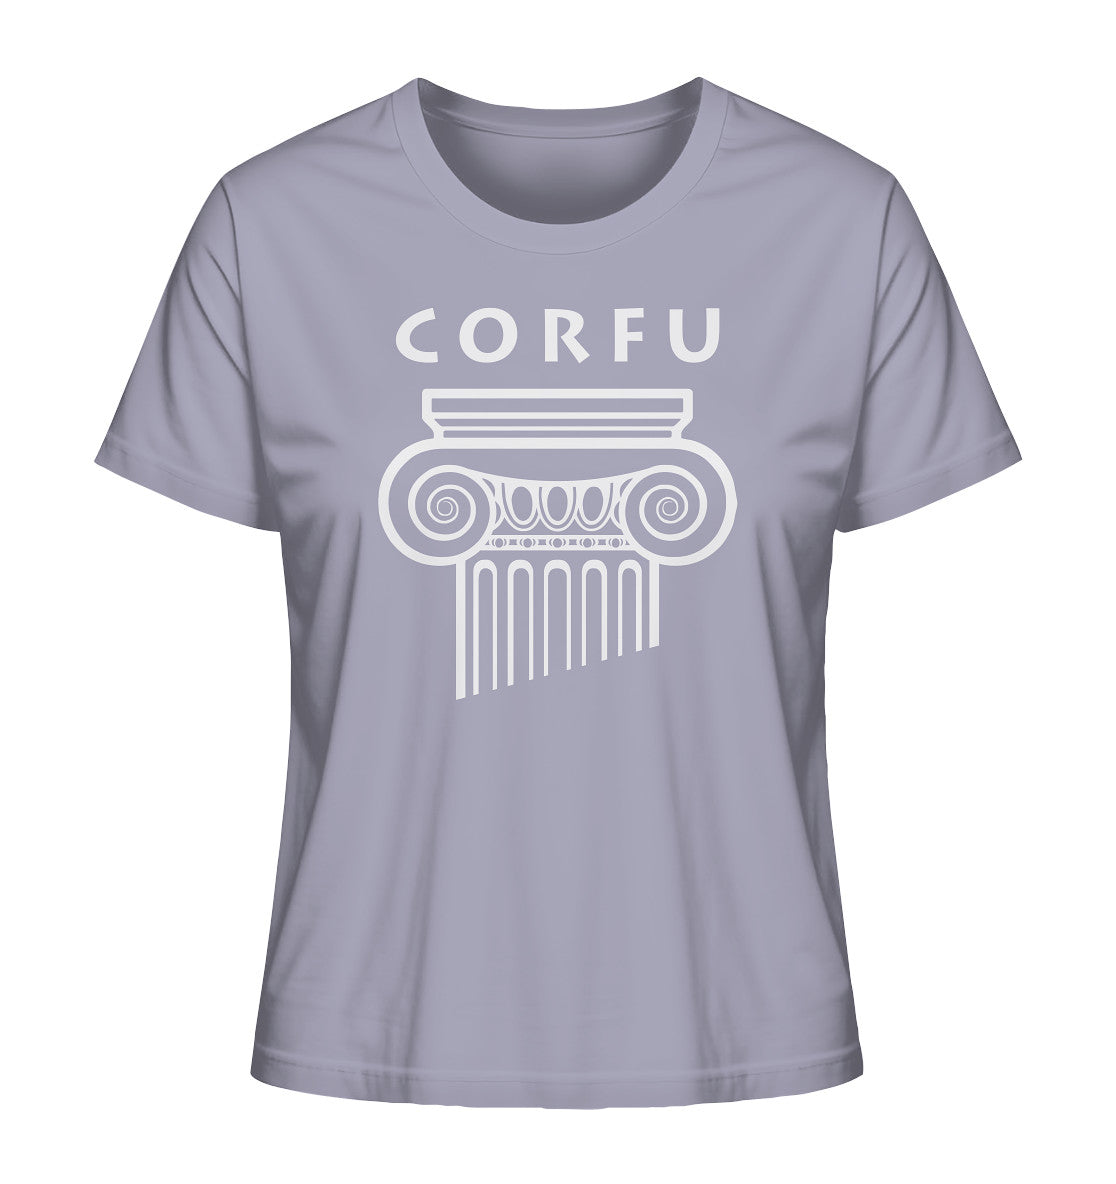 Corfu Griechischer Säulenkopf - Ladies Organic Shirt